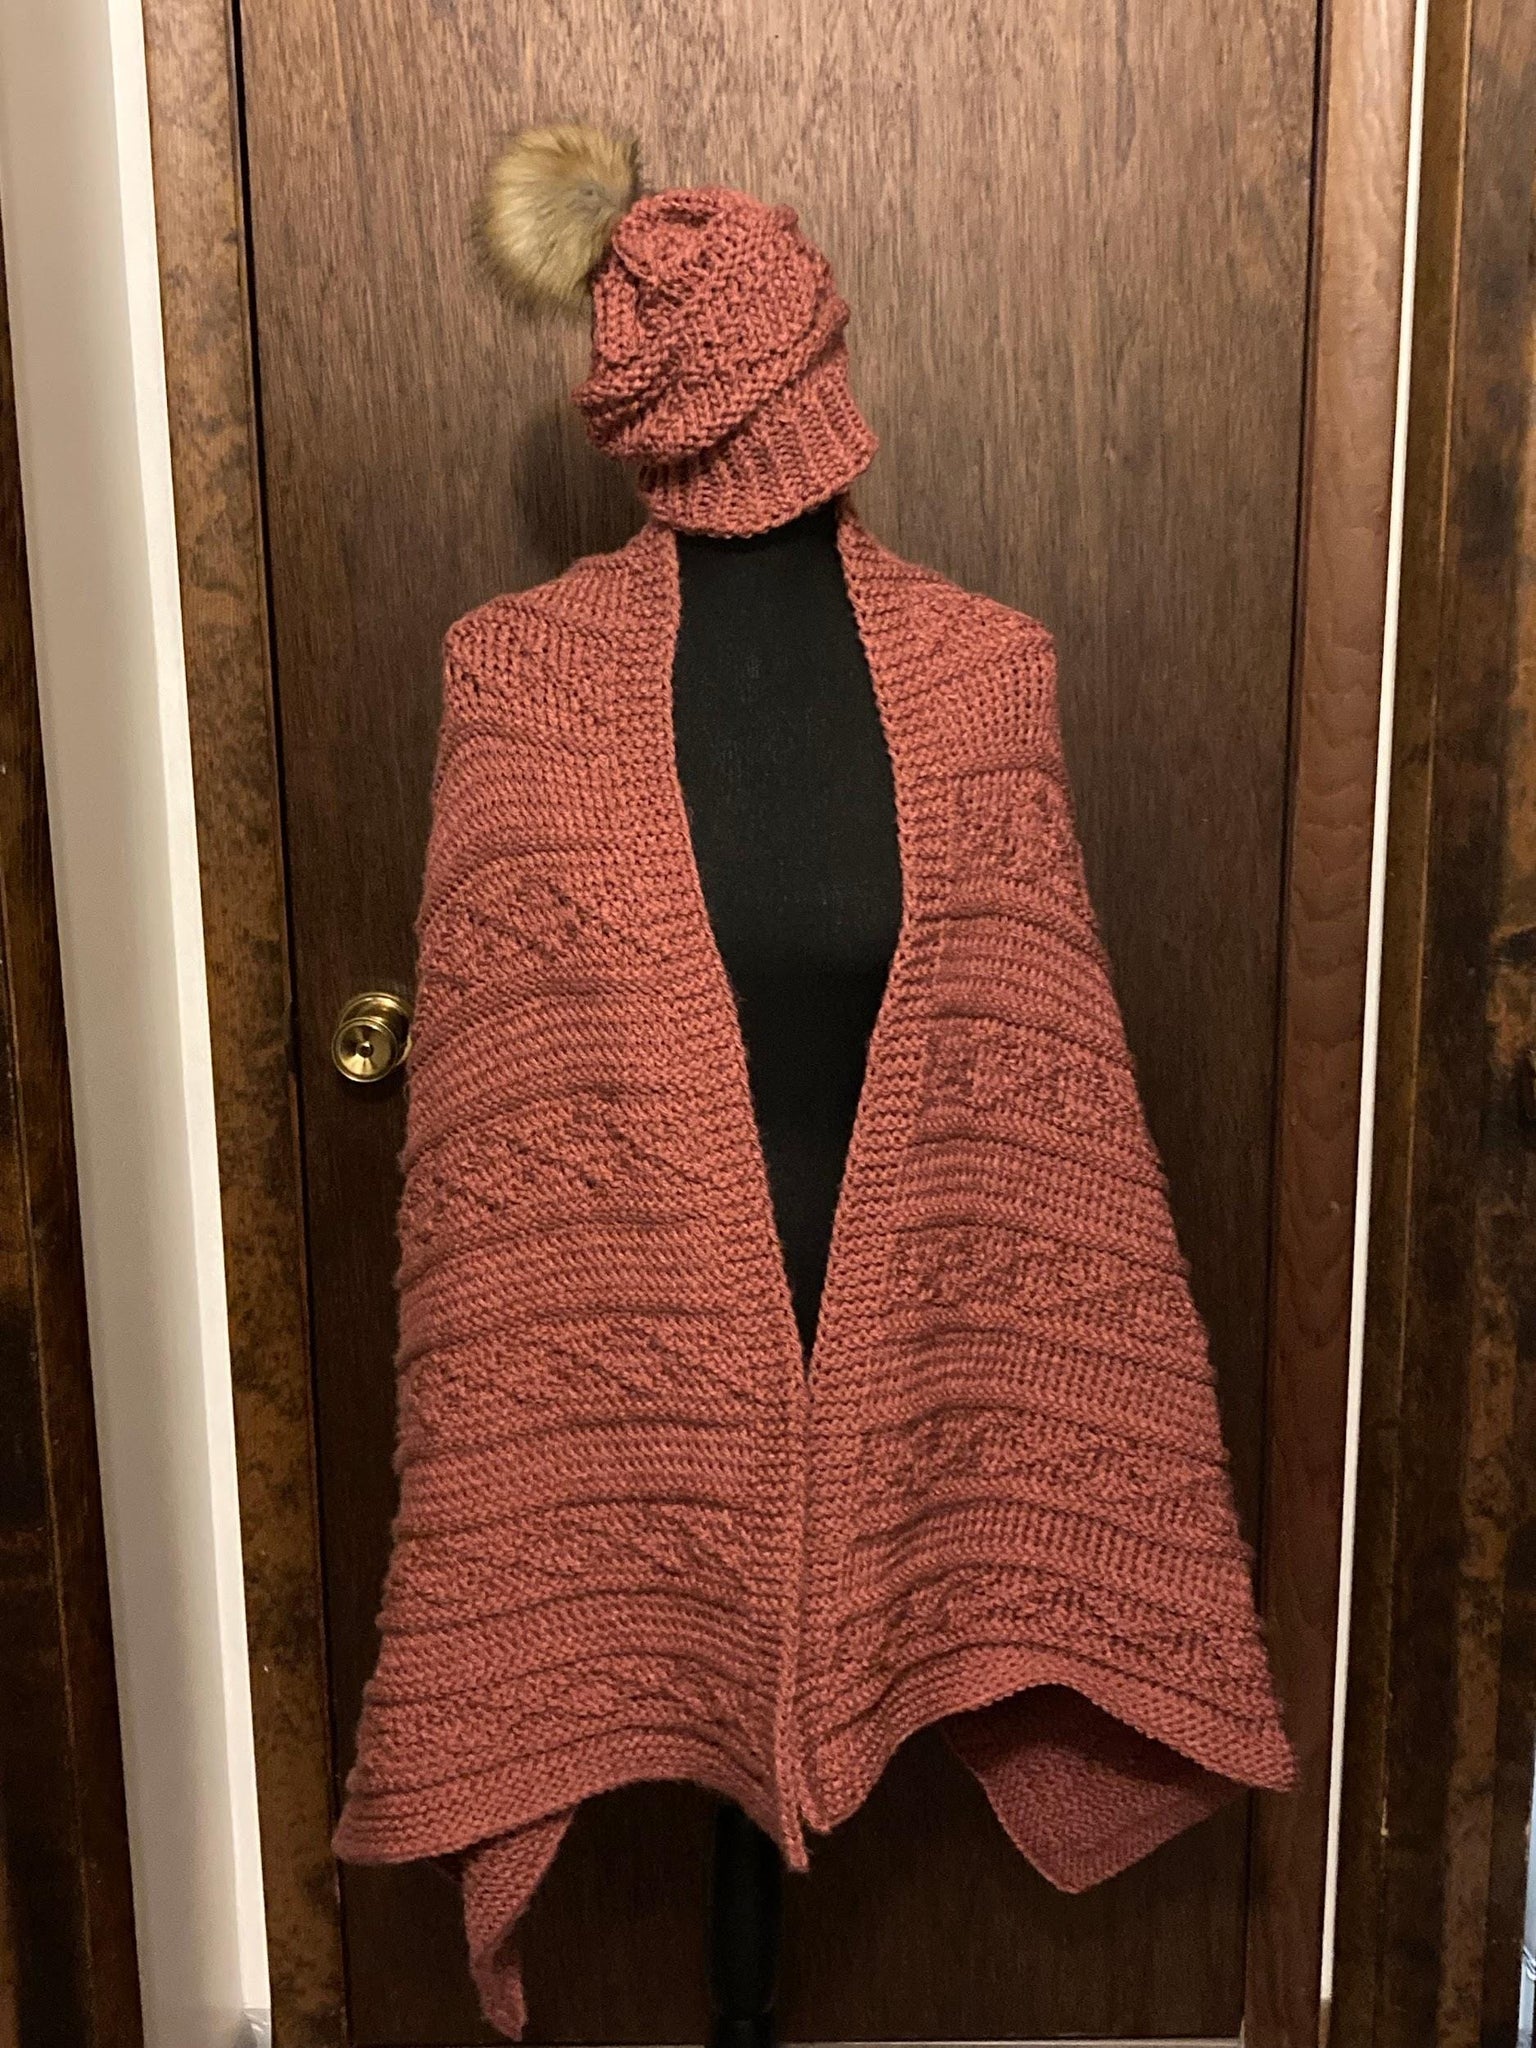 Santa Fe Scarf, Shawl, or Stole - a loom knit pattern